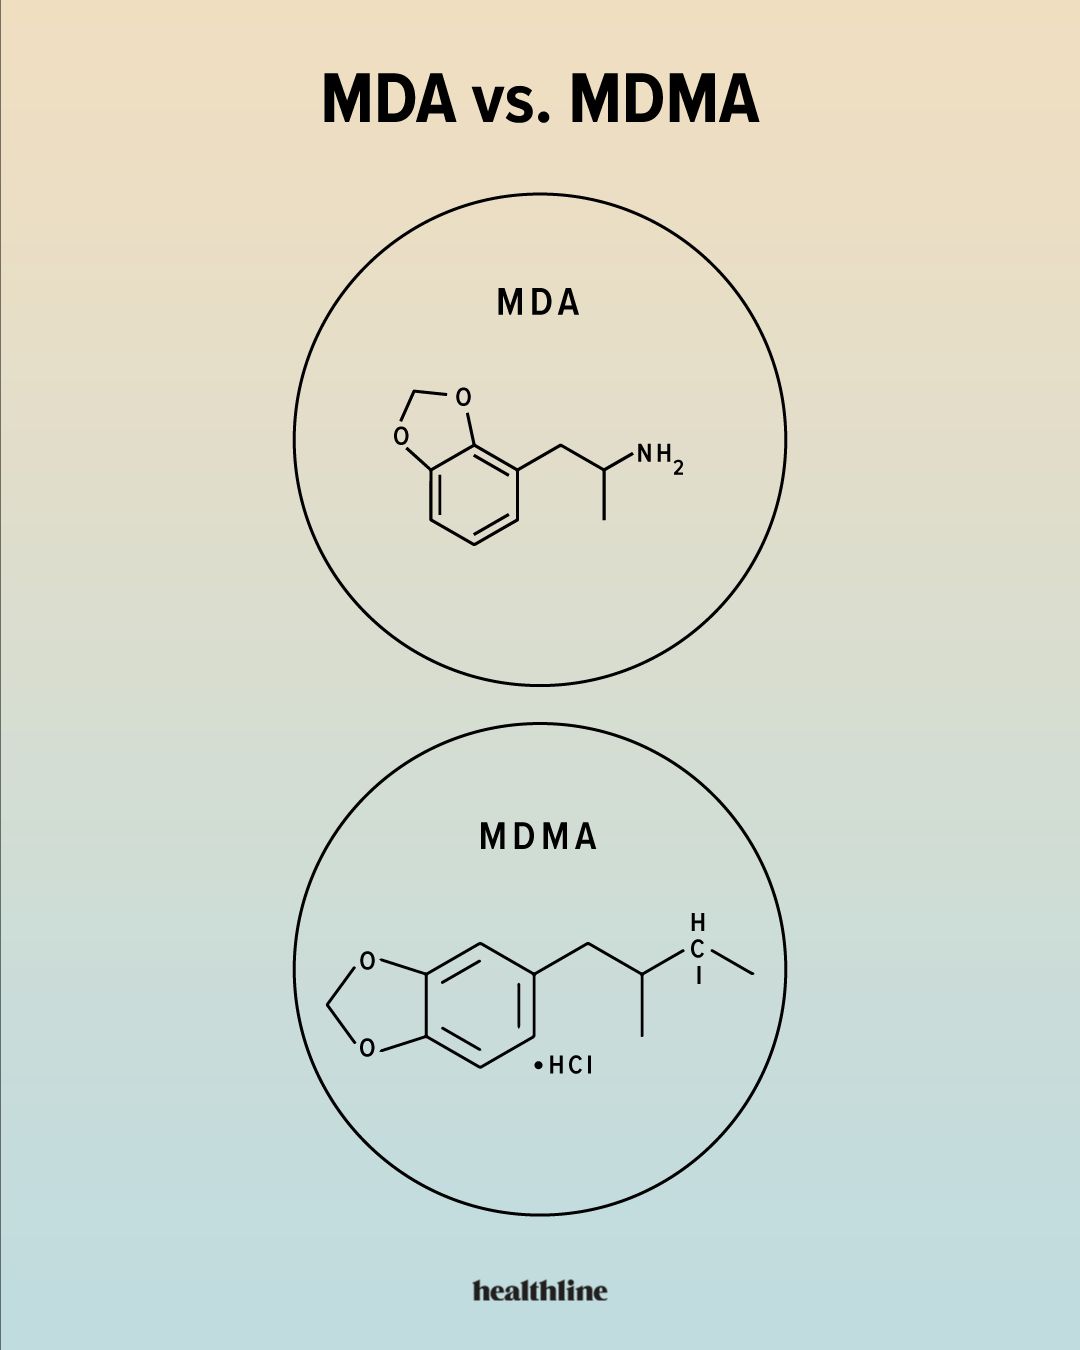 رسم توضيحي للتركيب الكيميائي لـ MDA وMDMA.